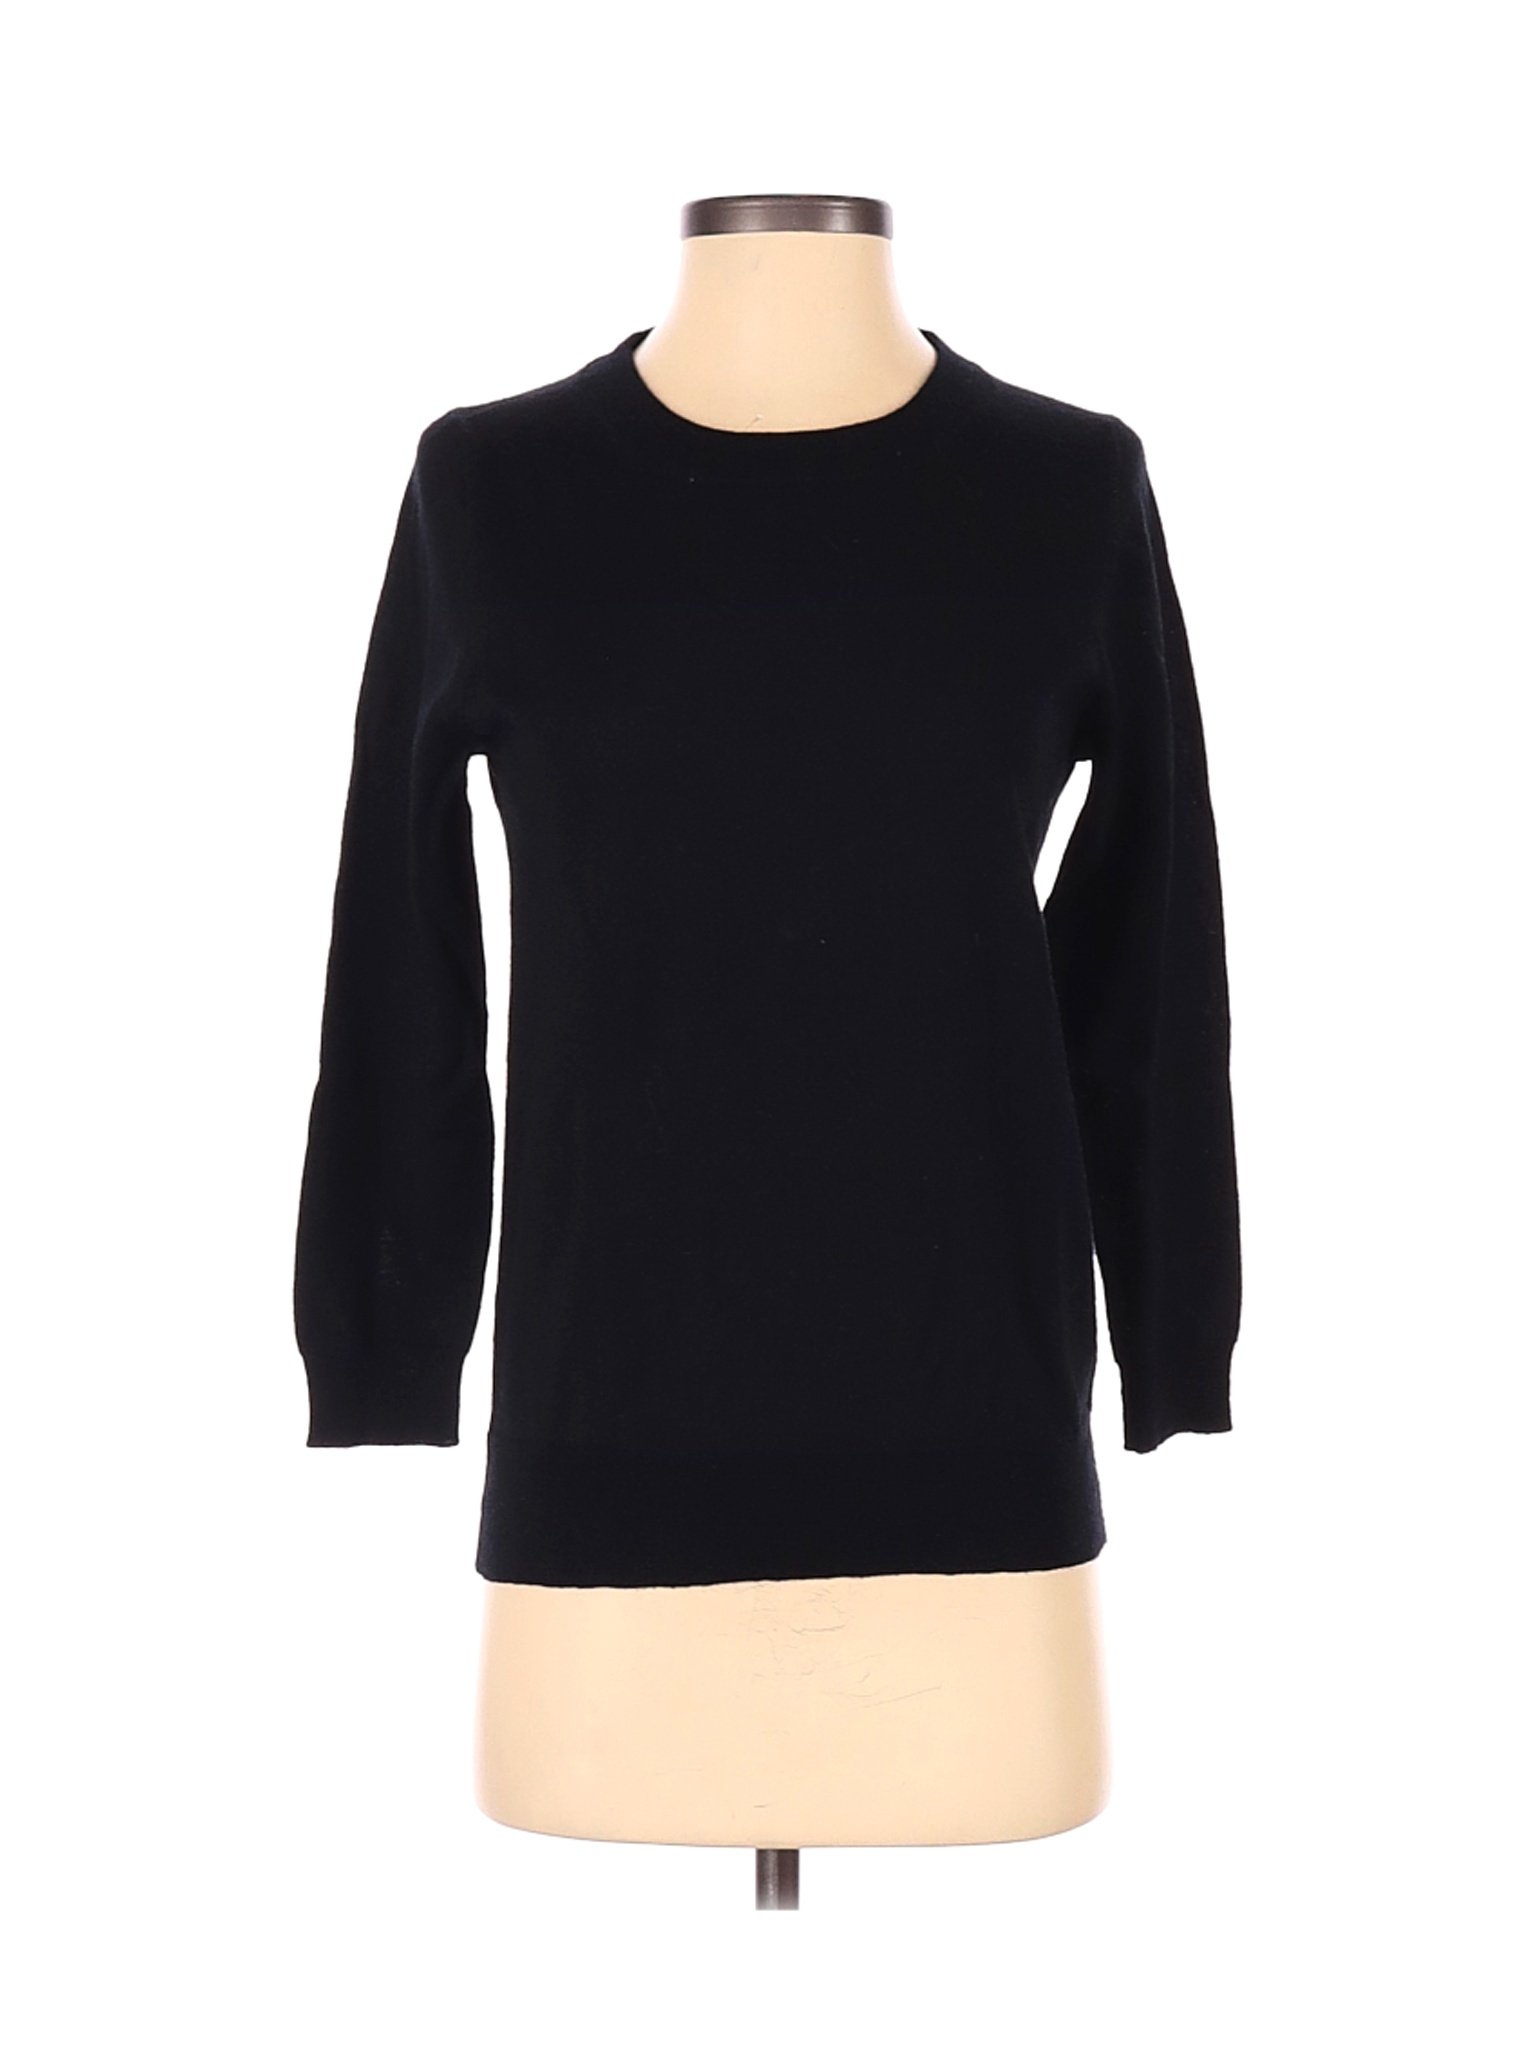 J.Crew Women Black Wool Pullover Sweater S | eBay